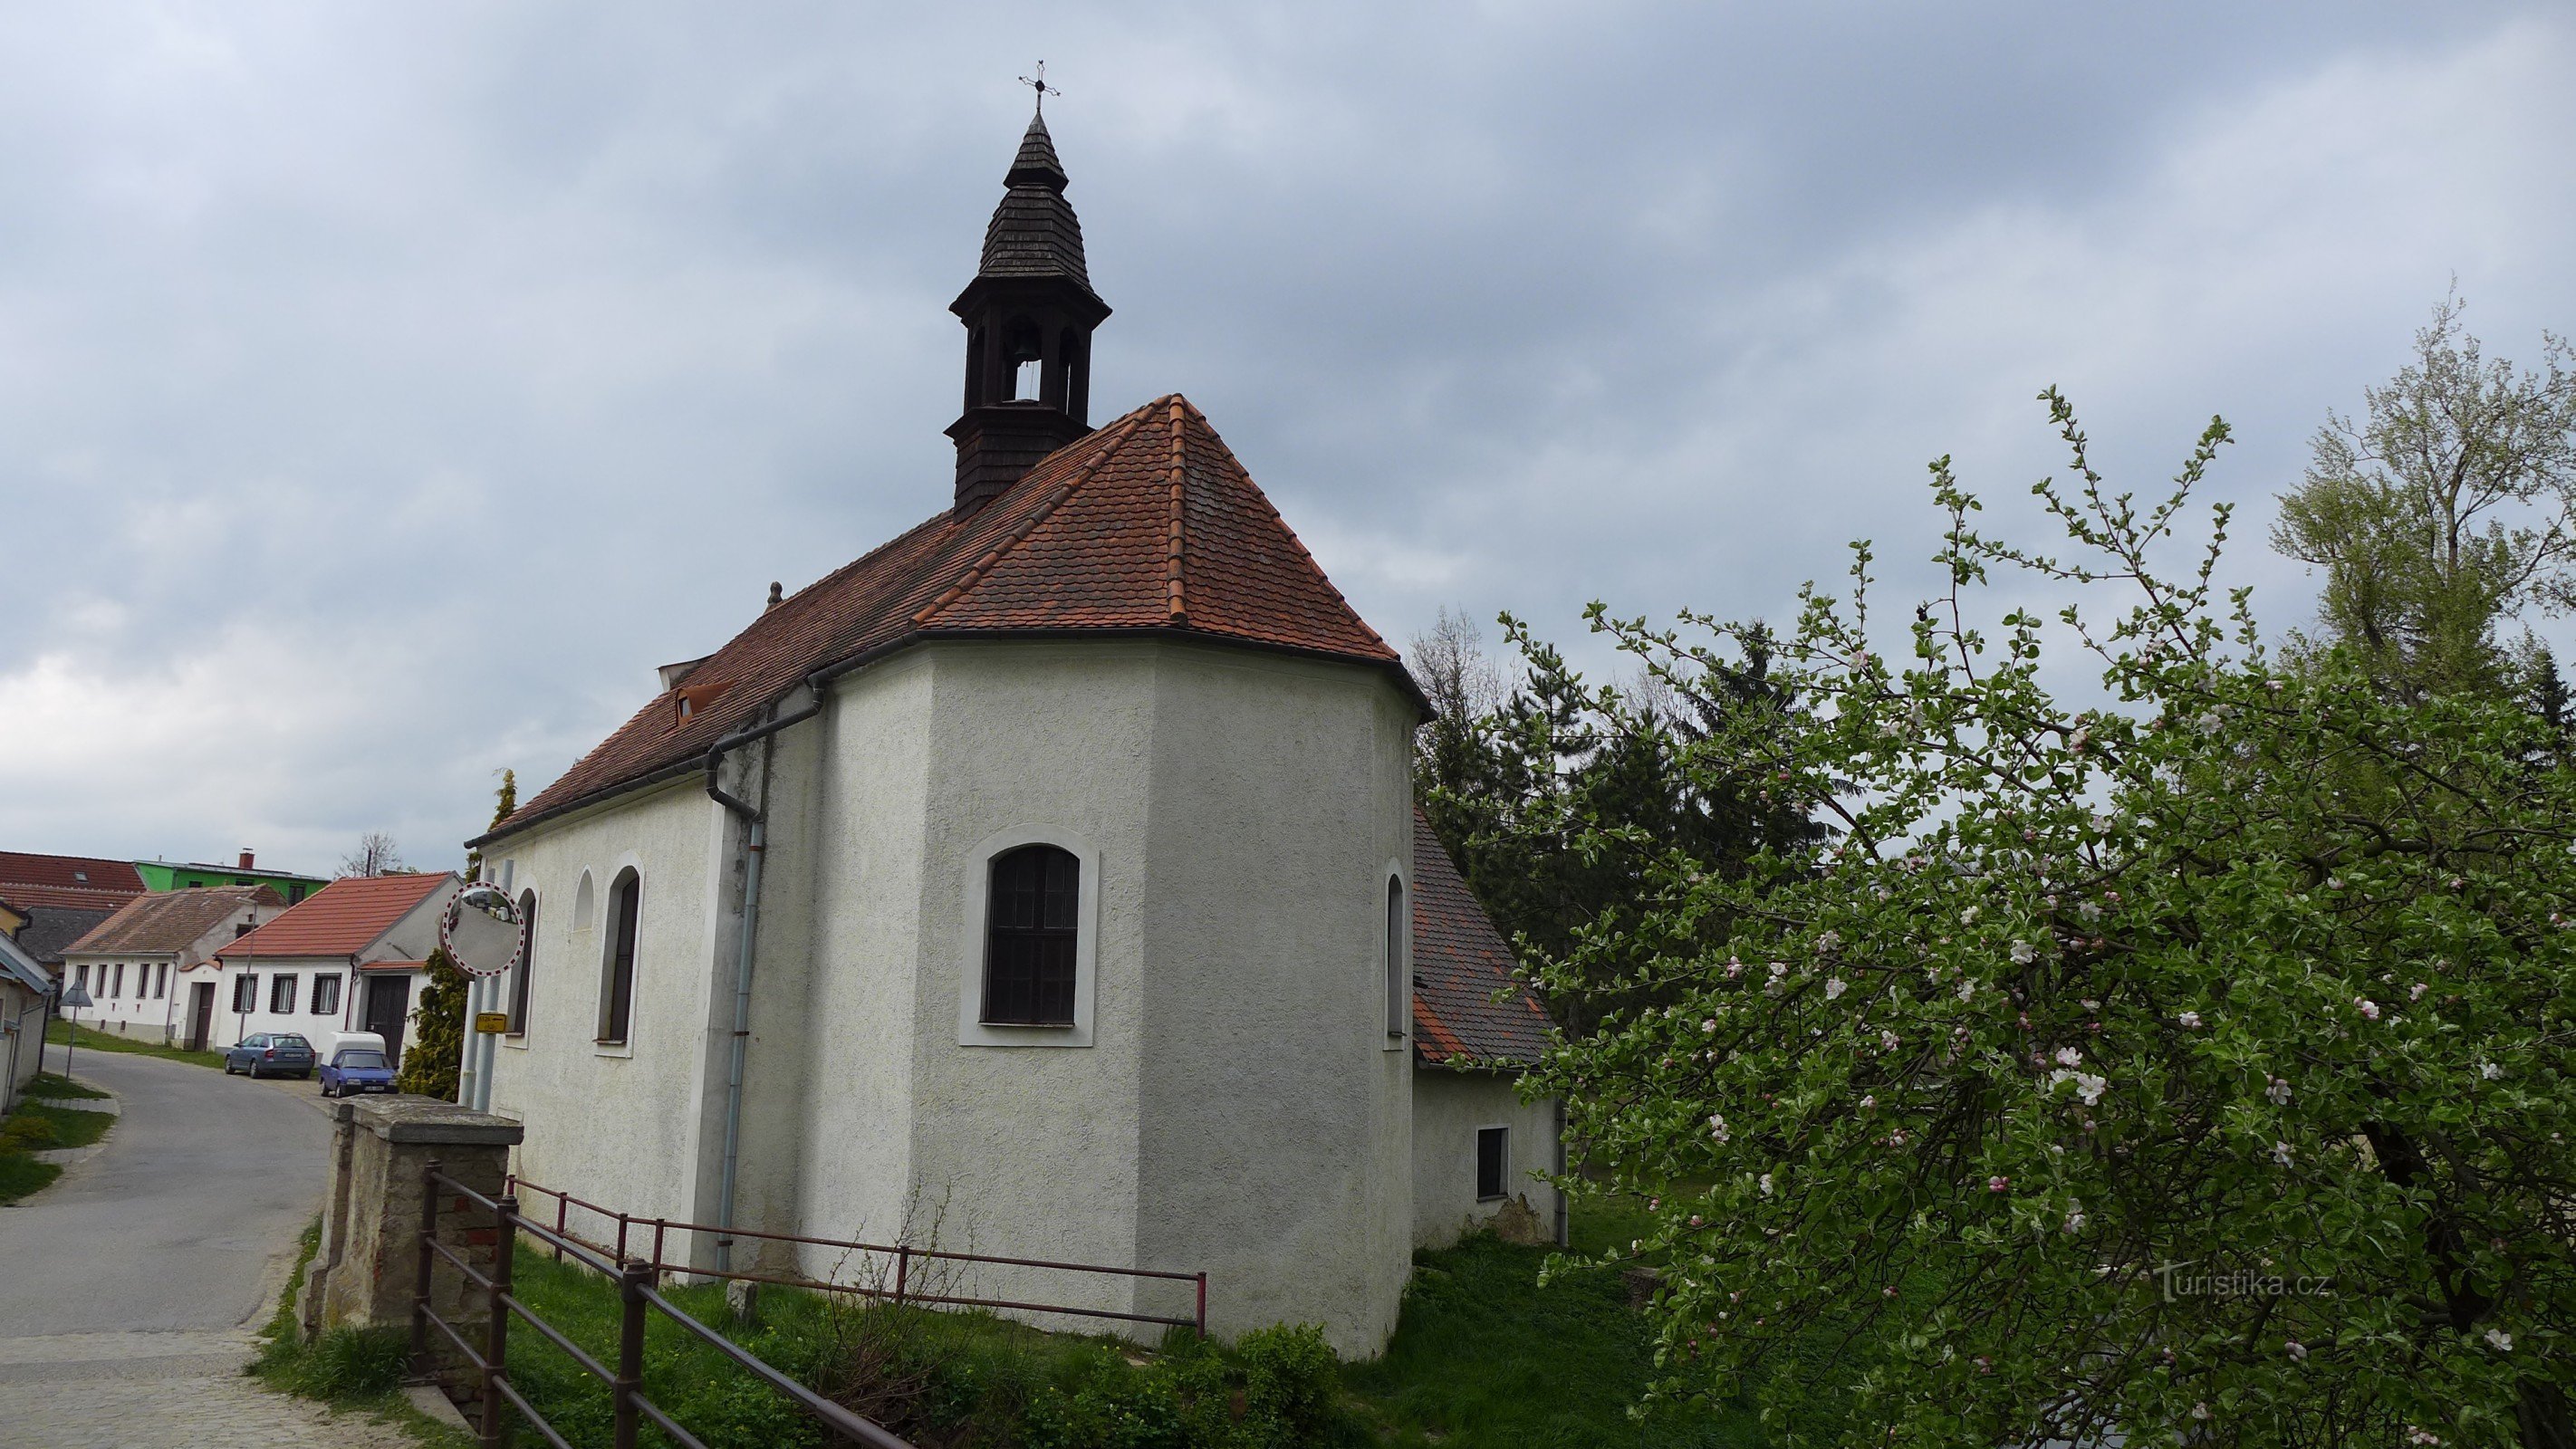 Moravské Budějovice - Chapel of St. Anne